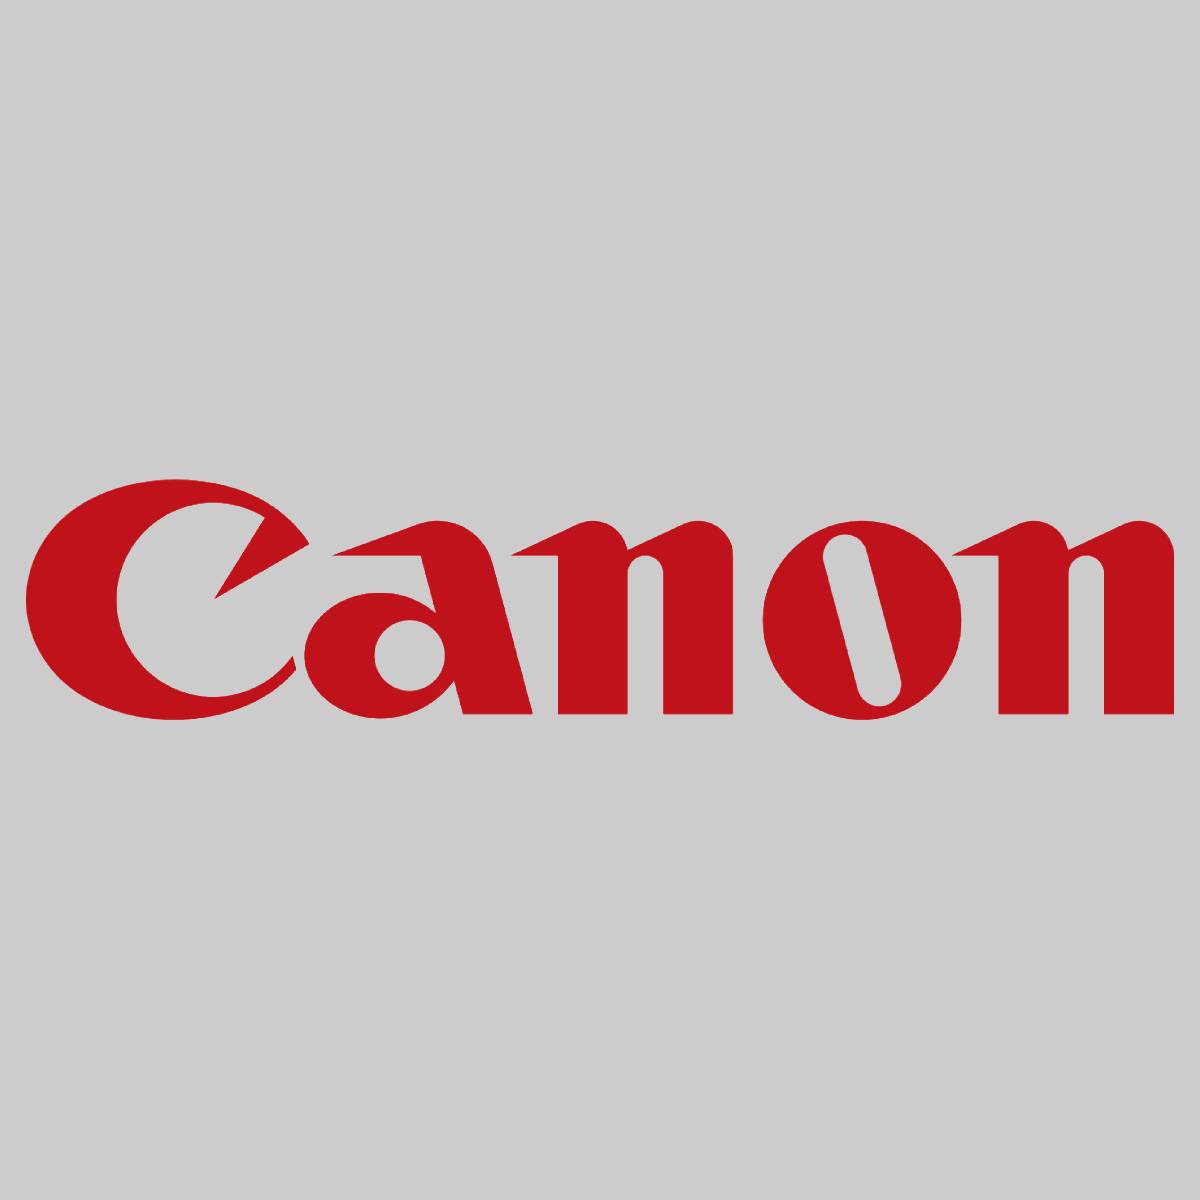 "Original Canon Fixing Film Assy FM3-5951-00R IR Adv 5030 5035 5235 5240 NEU OVP